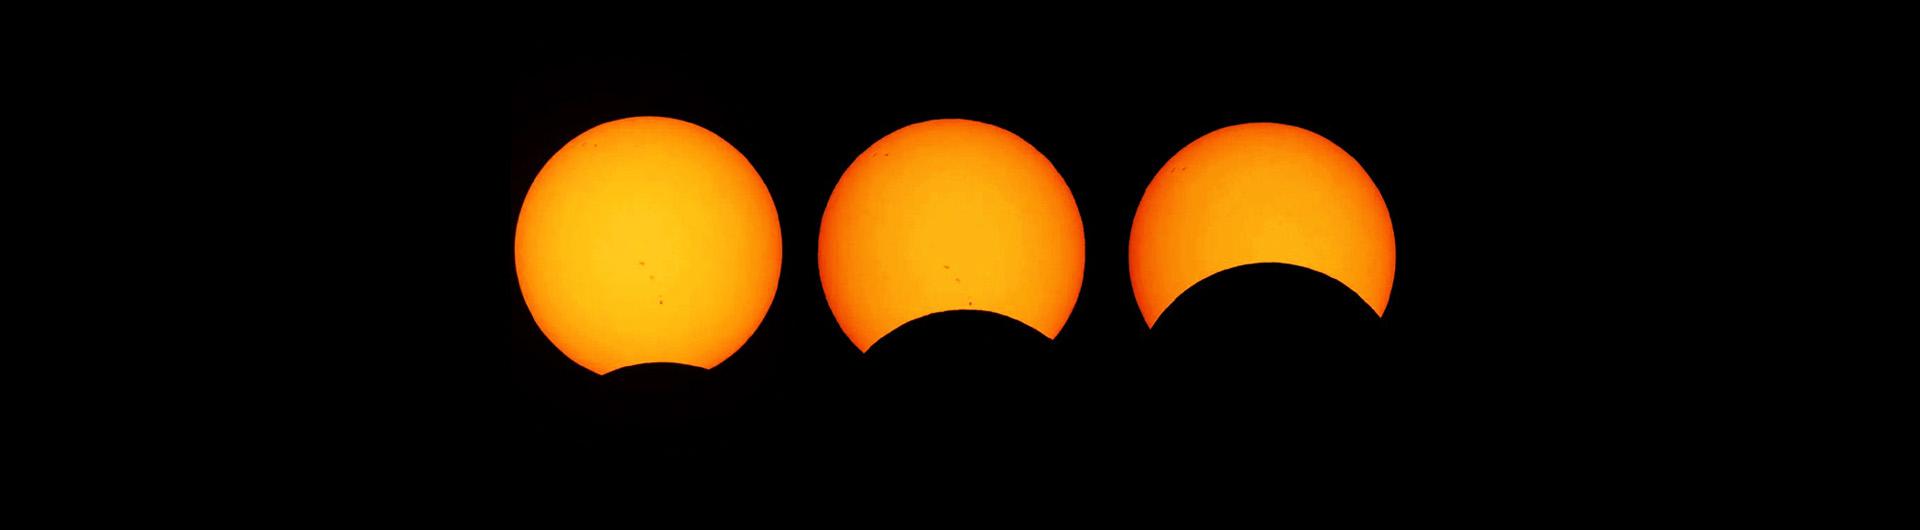 partial solar eclipse sequence